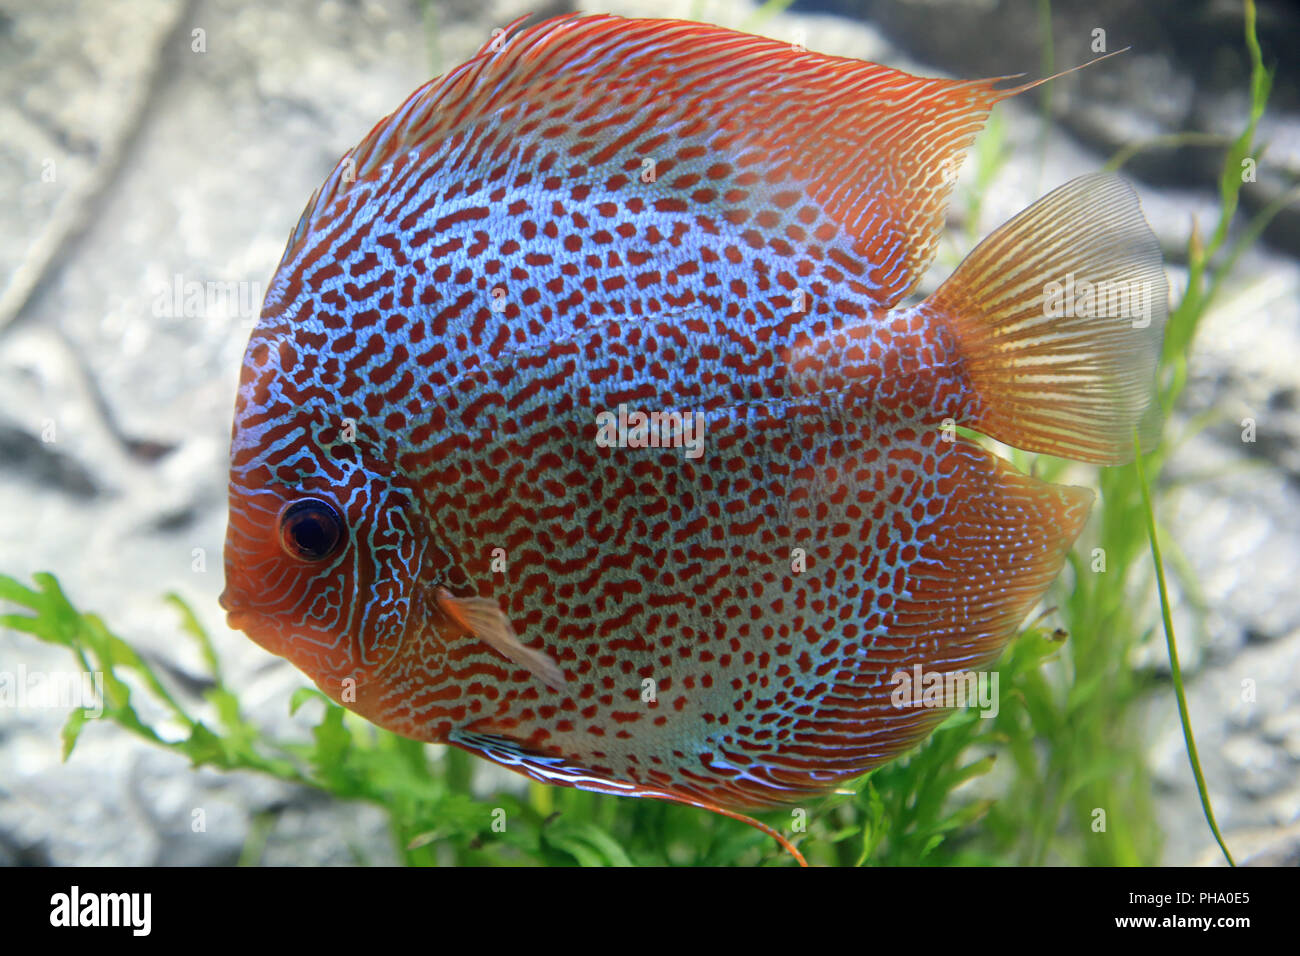 Discus fish, Symphysodon aequifasciatus Stock Photo